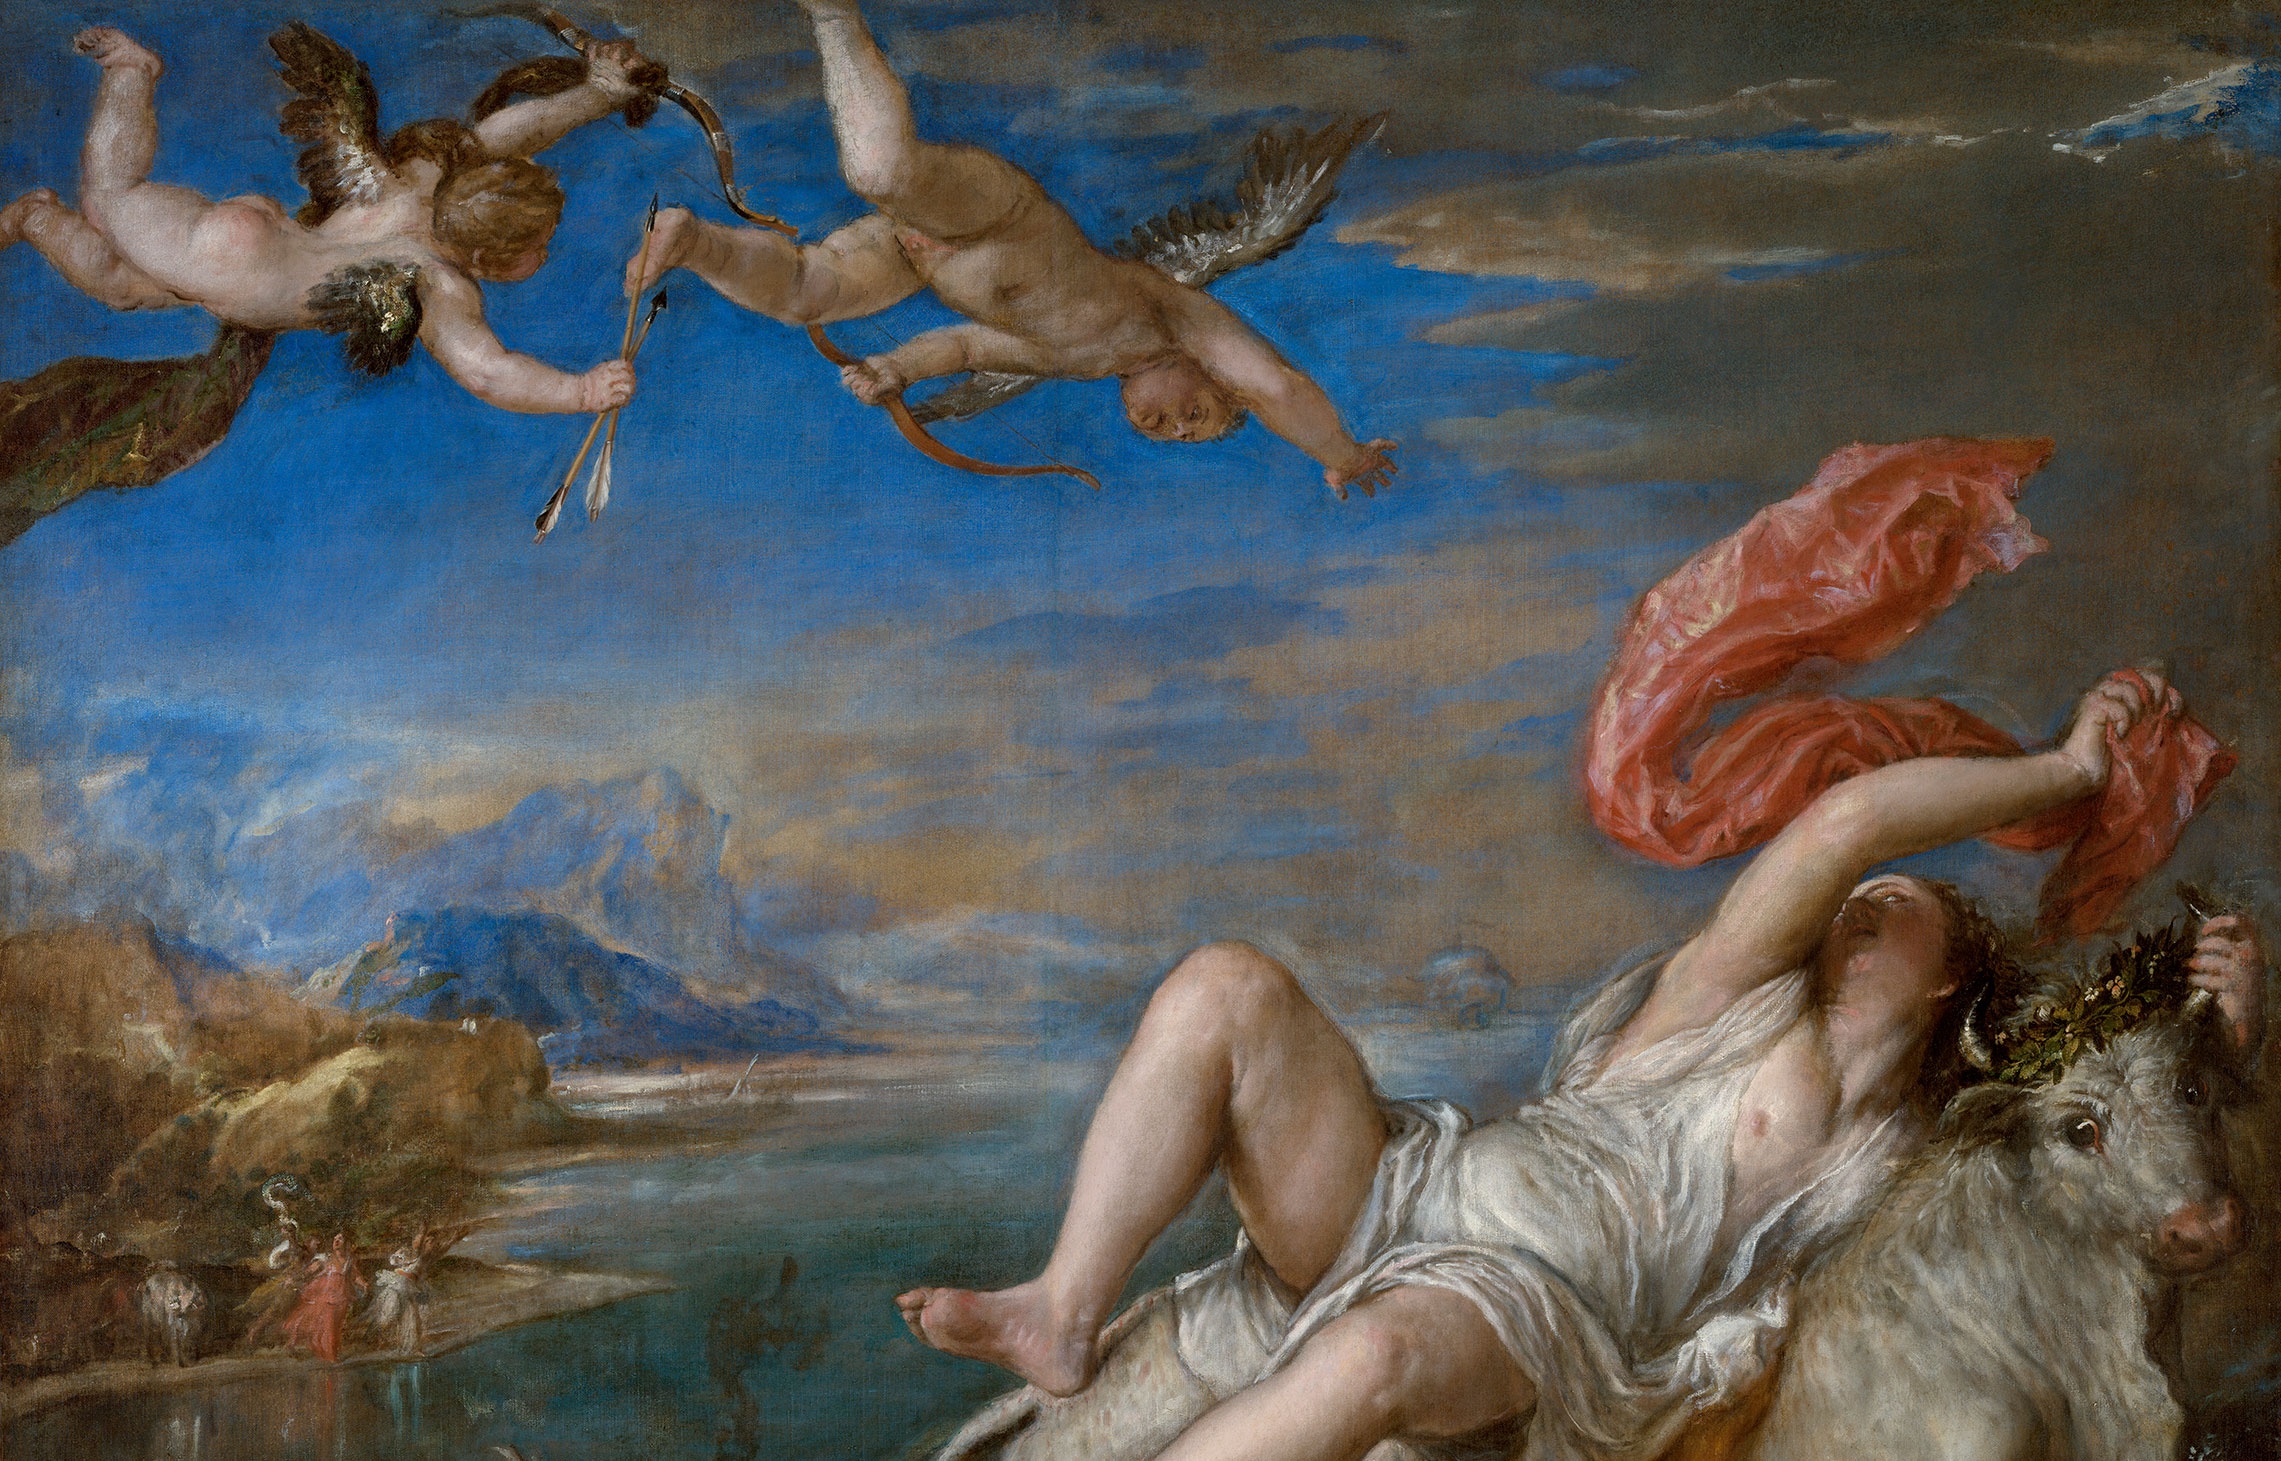 Titian, Rape of Europa (detail),Isabella Stewart Gardner Museum, Boston